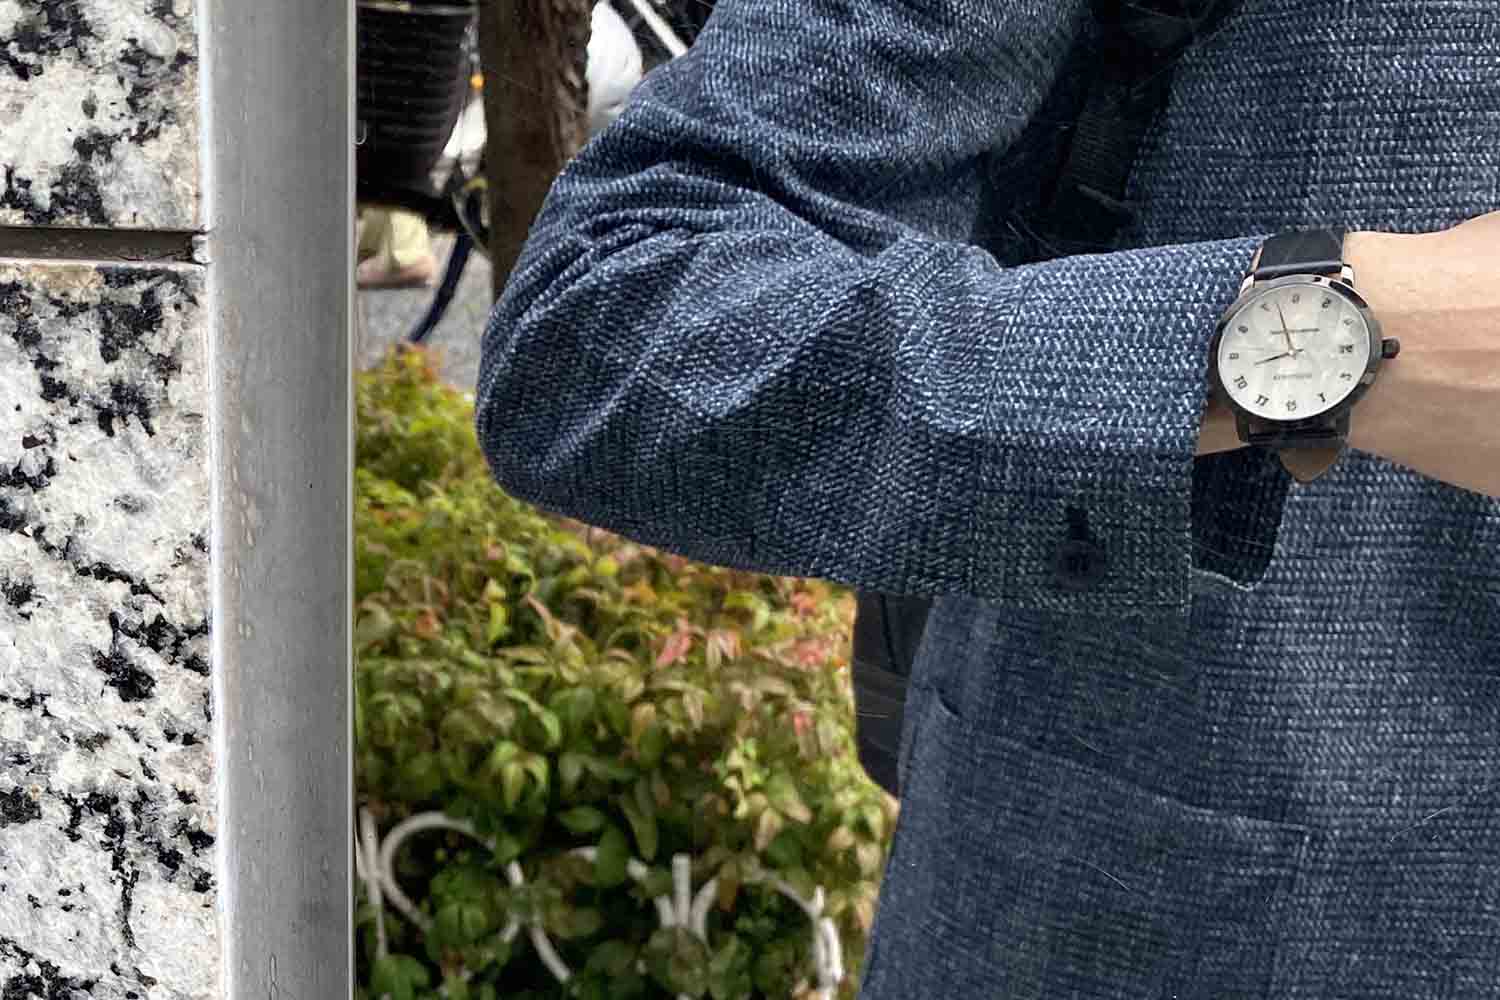 RENAUTUS ルノータス 腕時計 メンズ カスタム クラシッククォーツ40